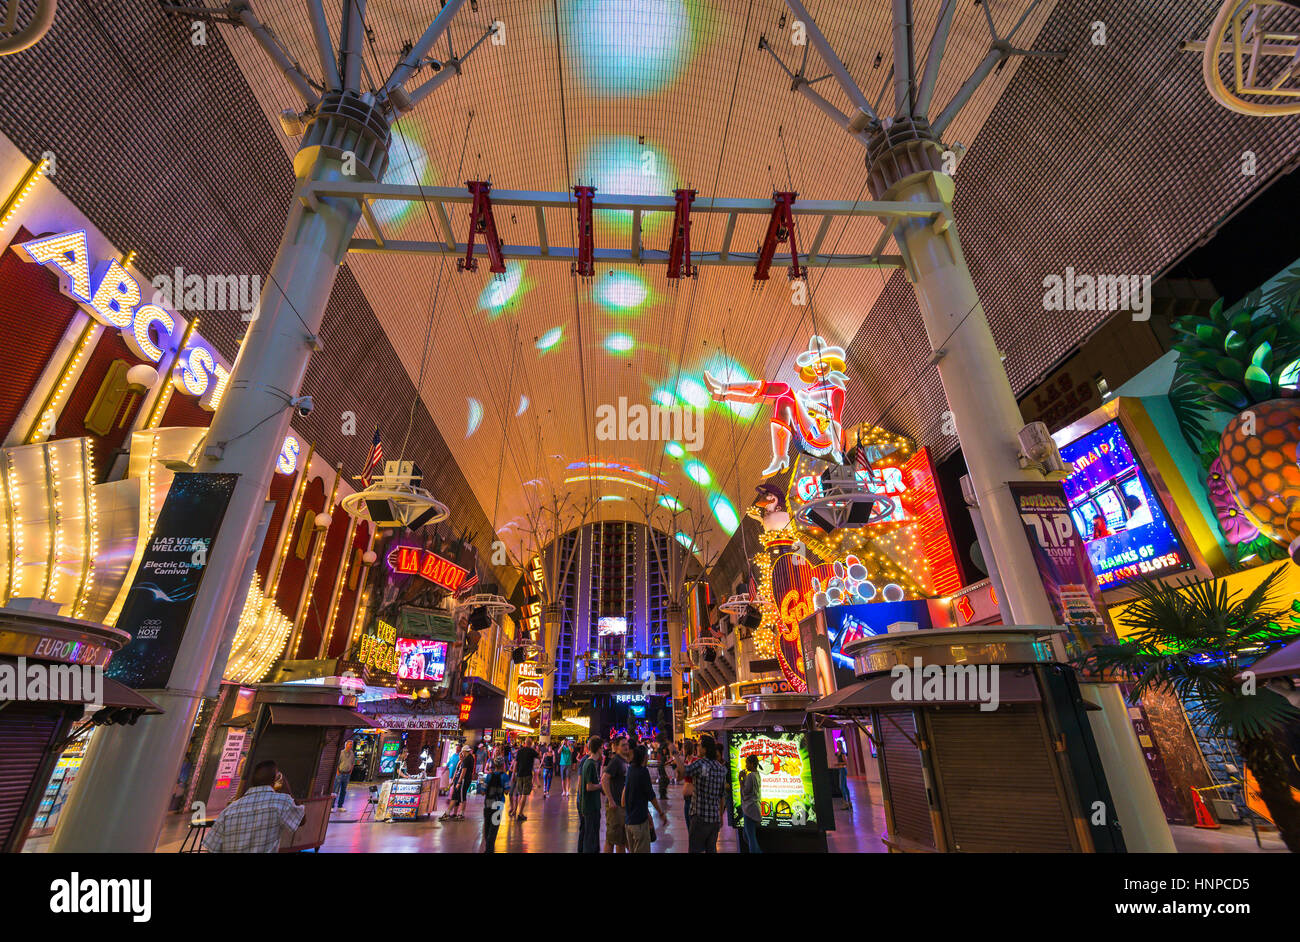 Espectáculo de luces en Fremont Street, Las Vegas, Nevada, EE.UU -06/24/15 -sólo para uso editorial. Foto de stock